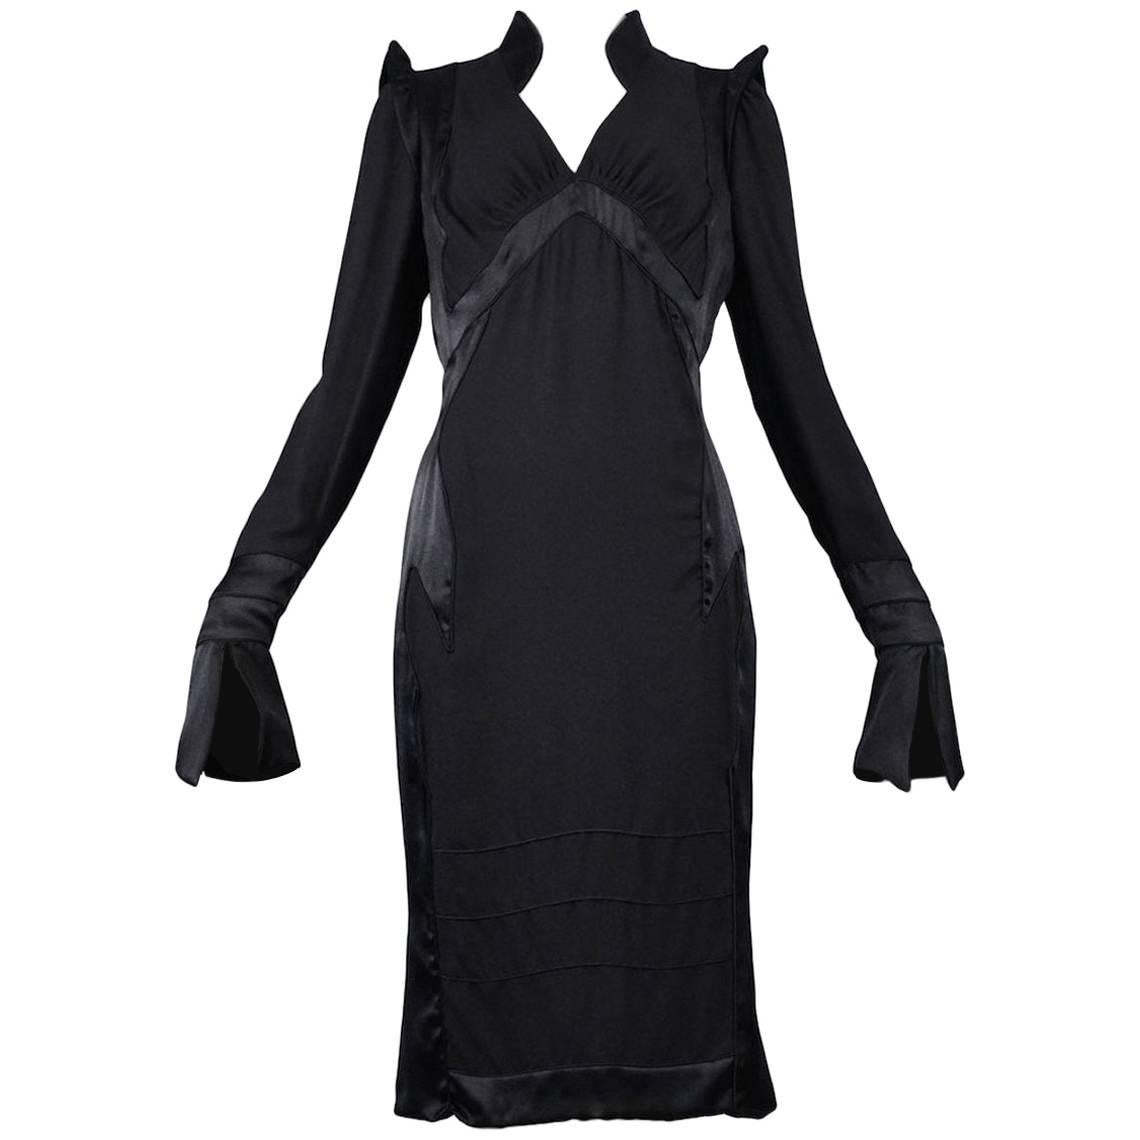 Tom Ford for Yves Saint Laurent Black Silk Dress 2004 For Sale